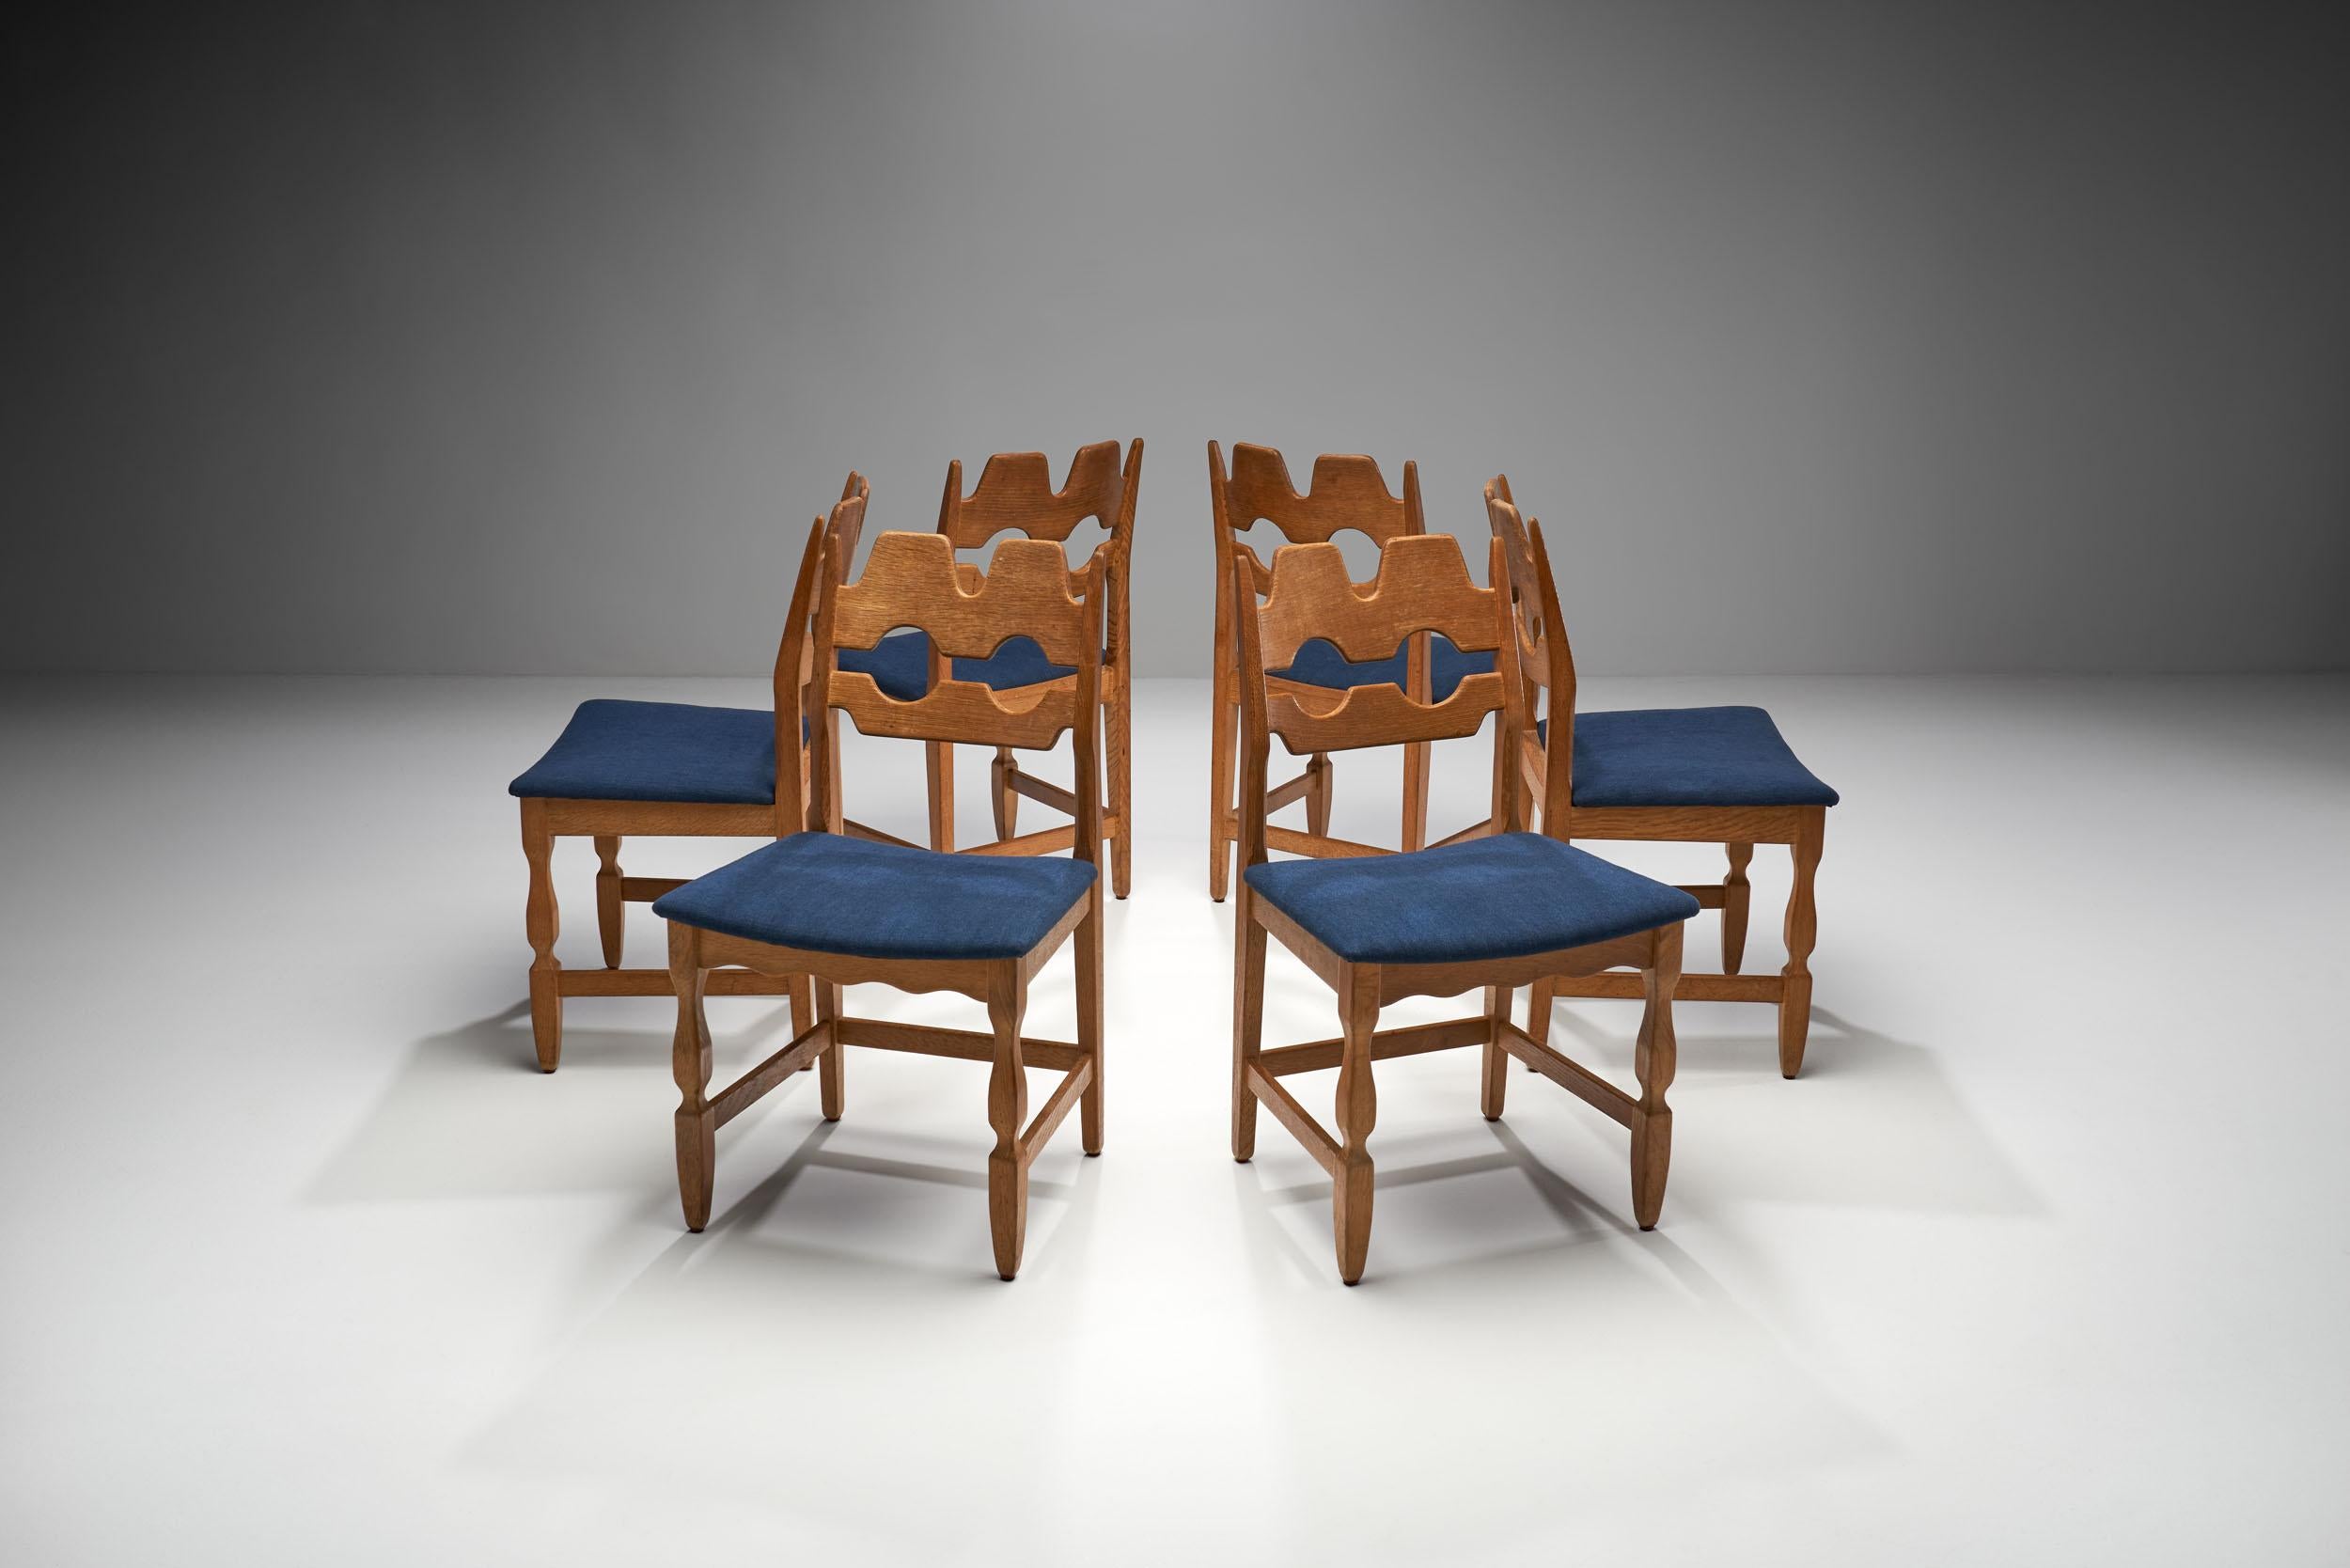 Les chaises Razorblade de Henning Kjaernulf sont les modèles les plus caractéristiques du designer. Cet ensemble a été fabriqué par la société danoise EG Kvalitetsmobel dans les années 1960, ce qui en fait un véritable ensemble danois du milieu du